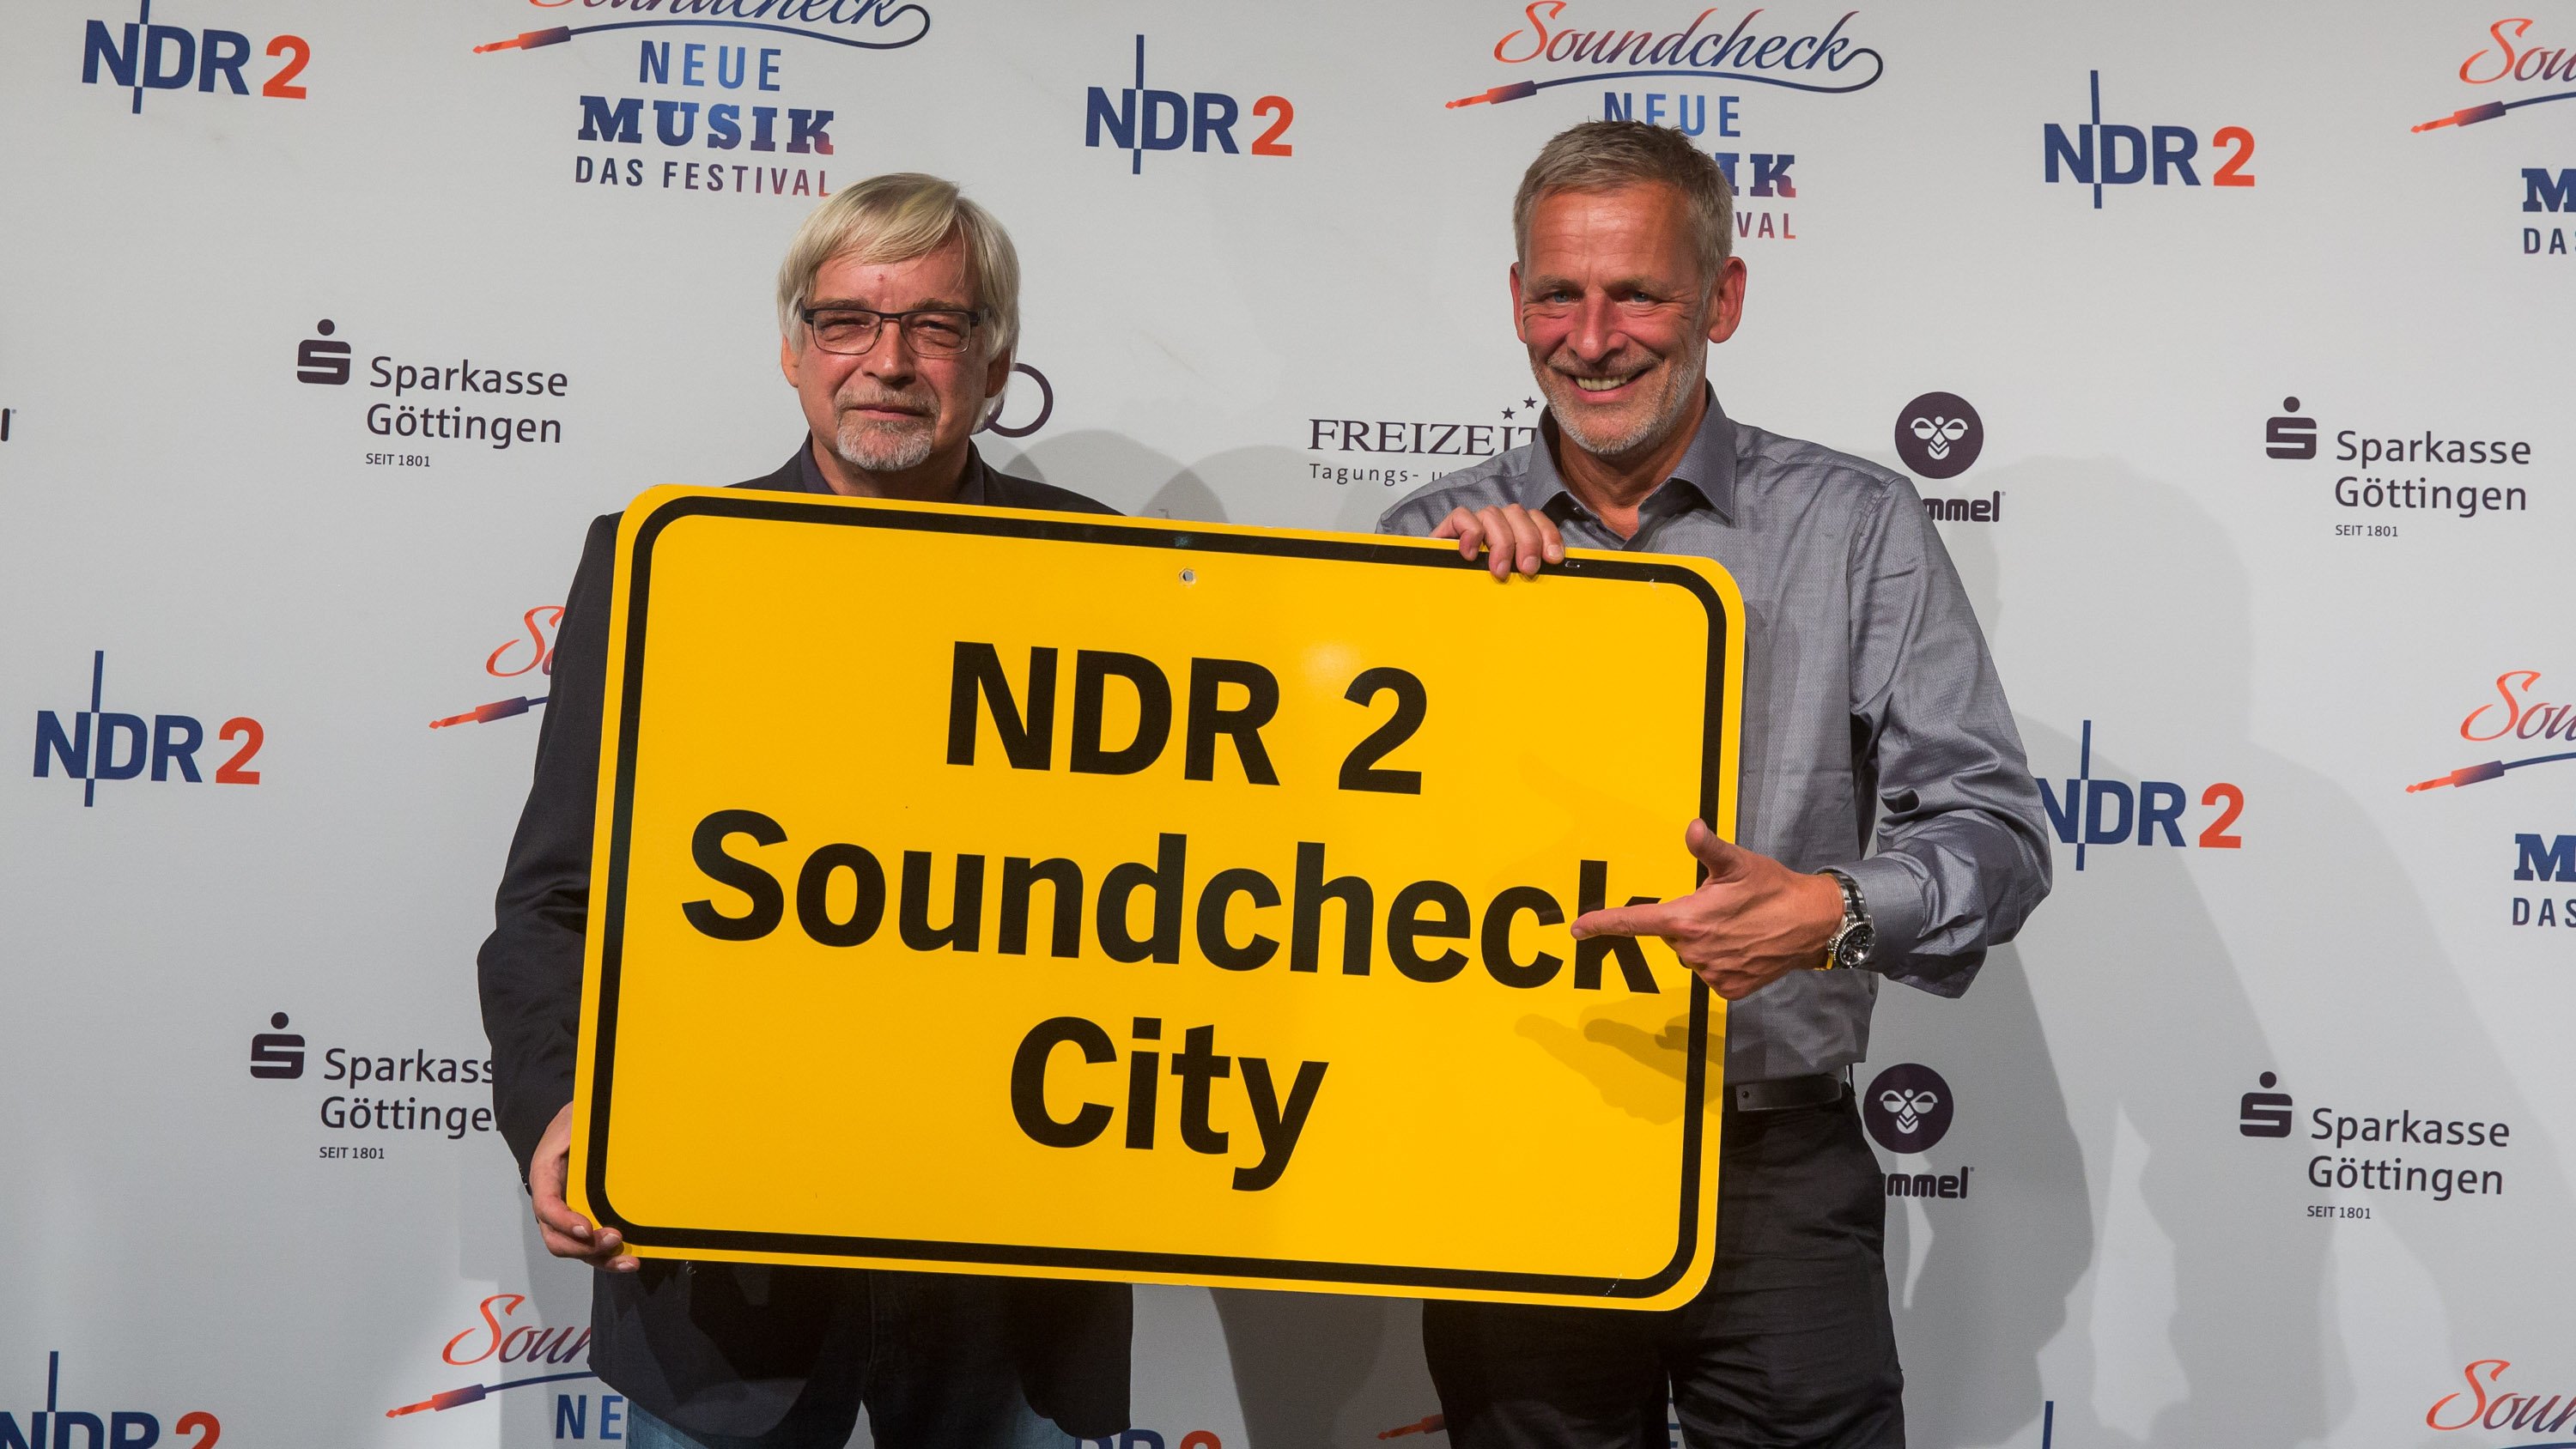 Rolf-Georg Köhler und Torsten Engel kündigen das NDR 2 Soundcheck Neue Musik Festival 2017 an _ Verwendung honorarfrei (c)Axel Herzig